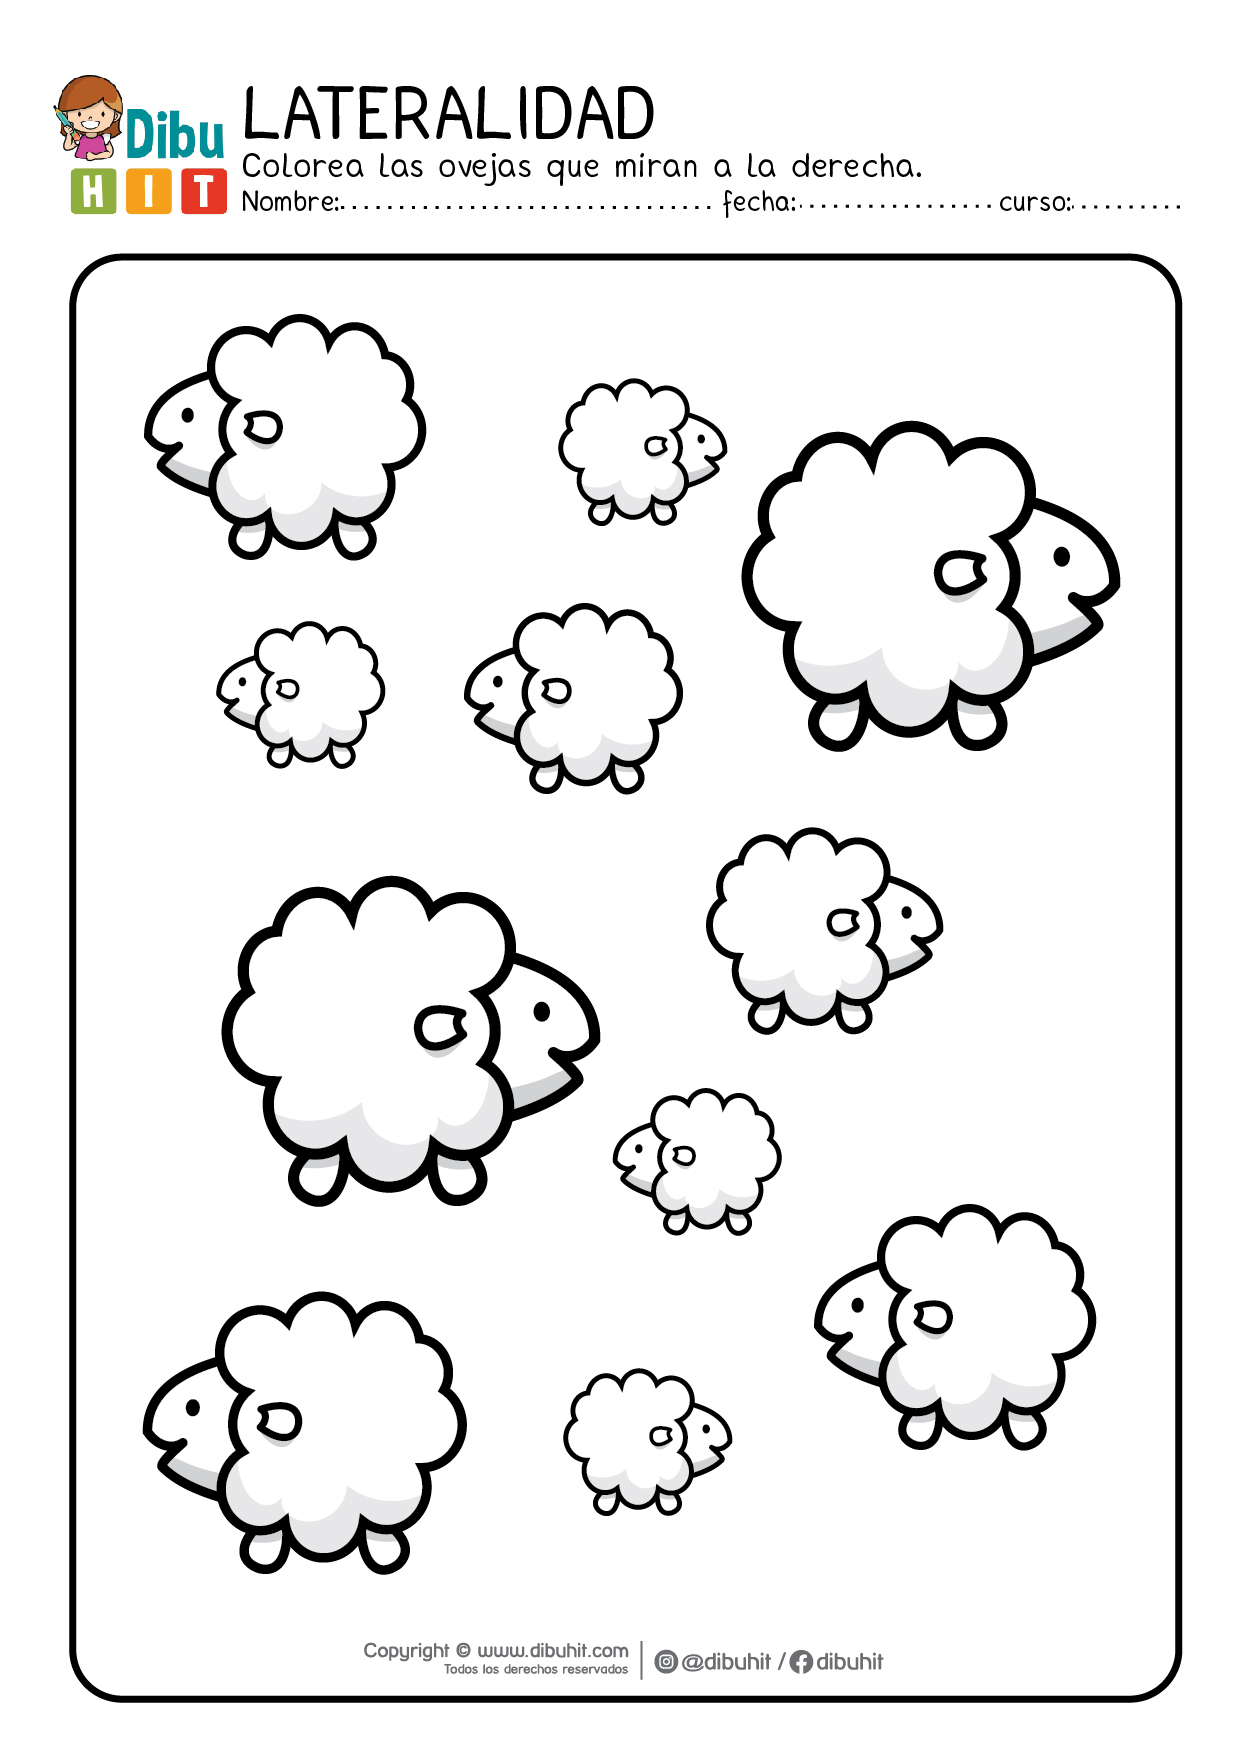 Lateralidad actividad ficha ovejas grandes y pequeñas